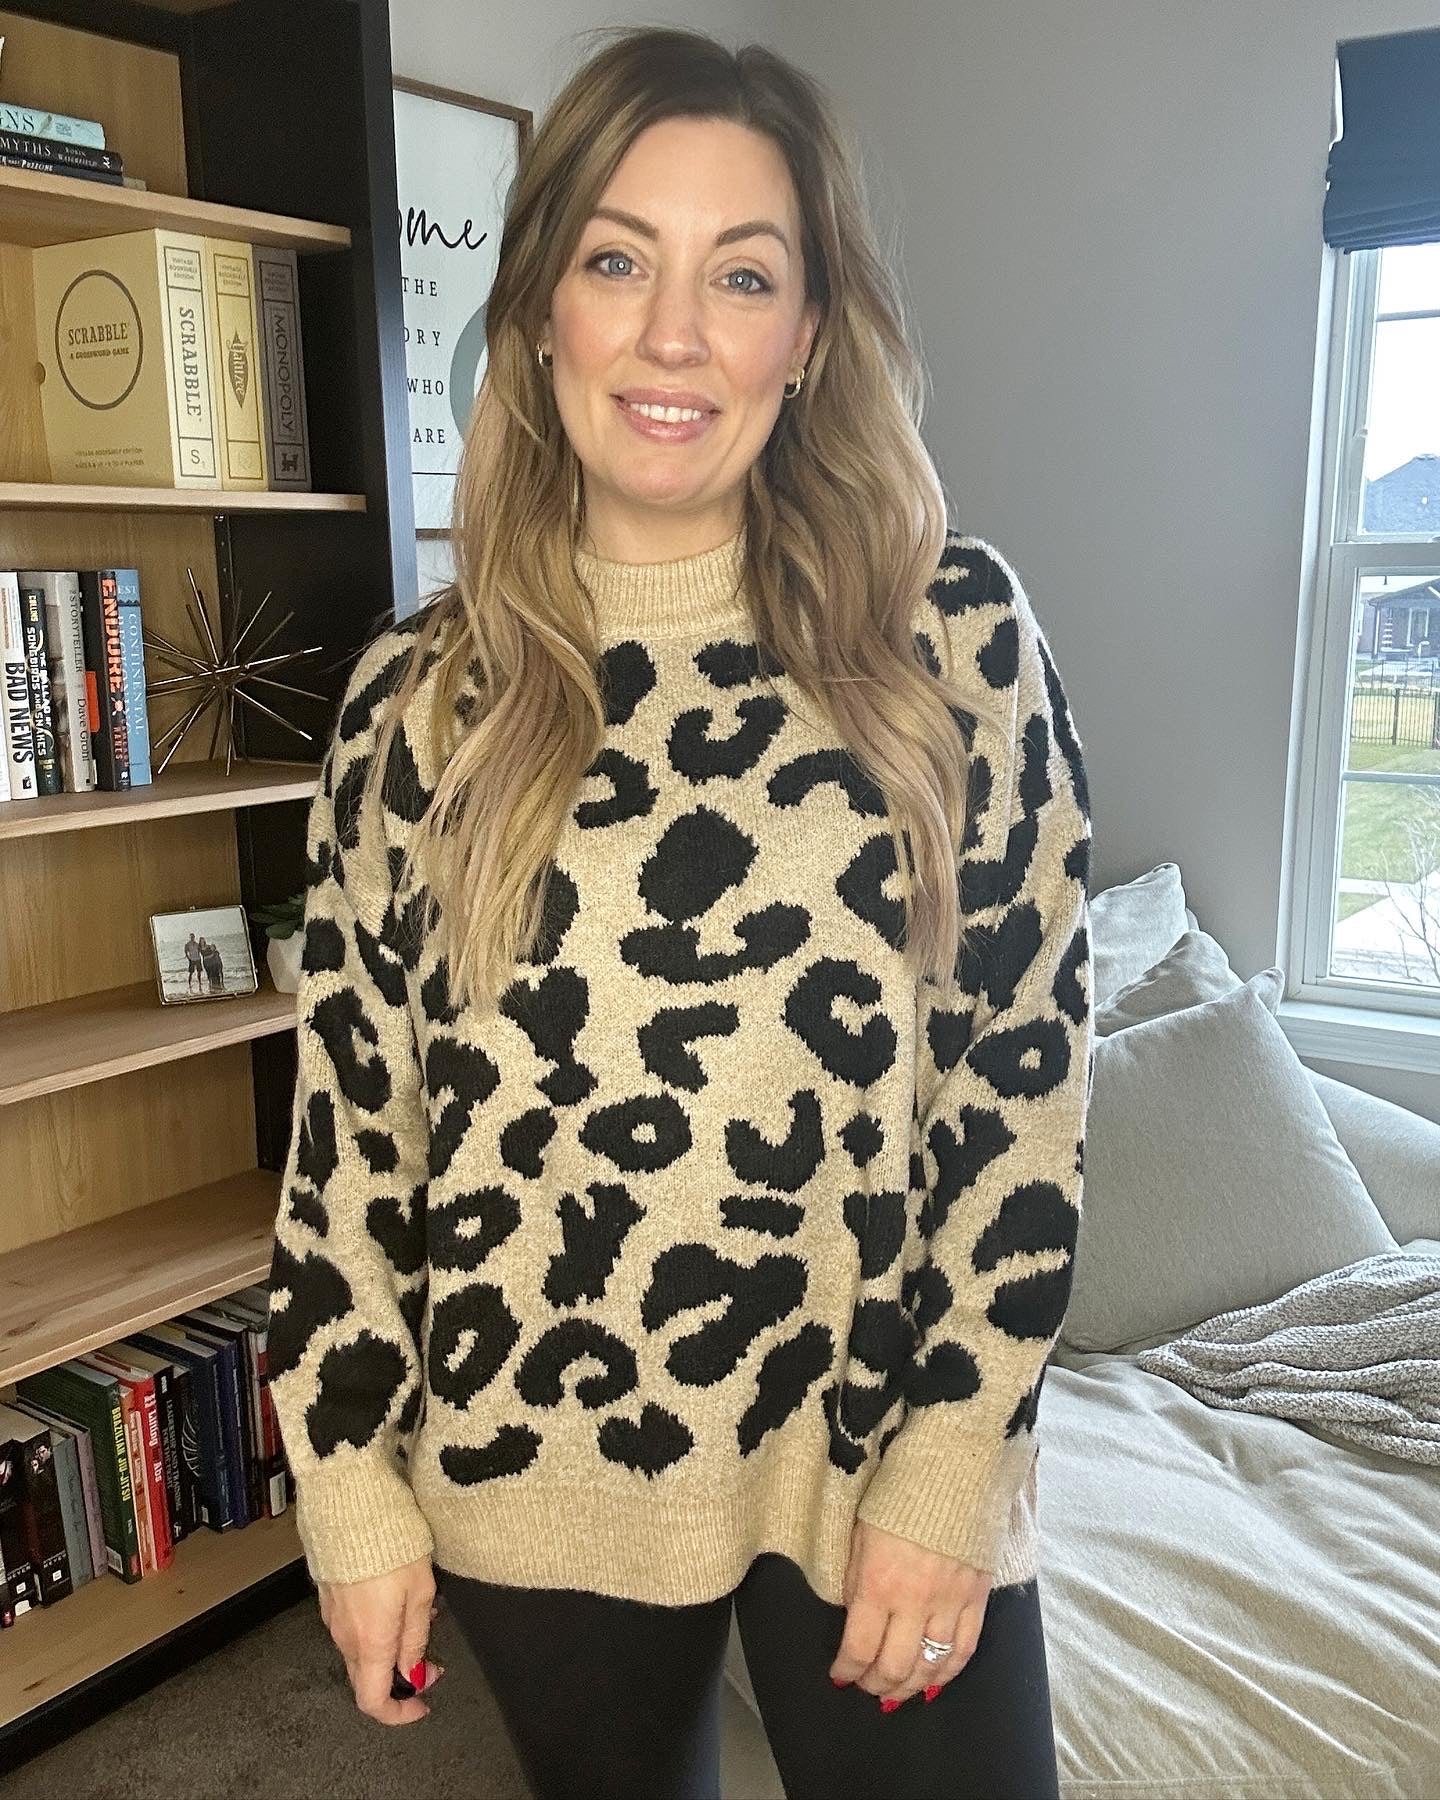 Kenzie Leopard Sweater